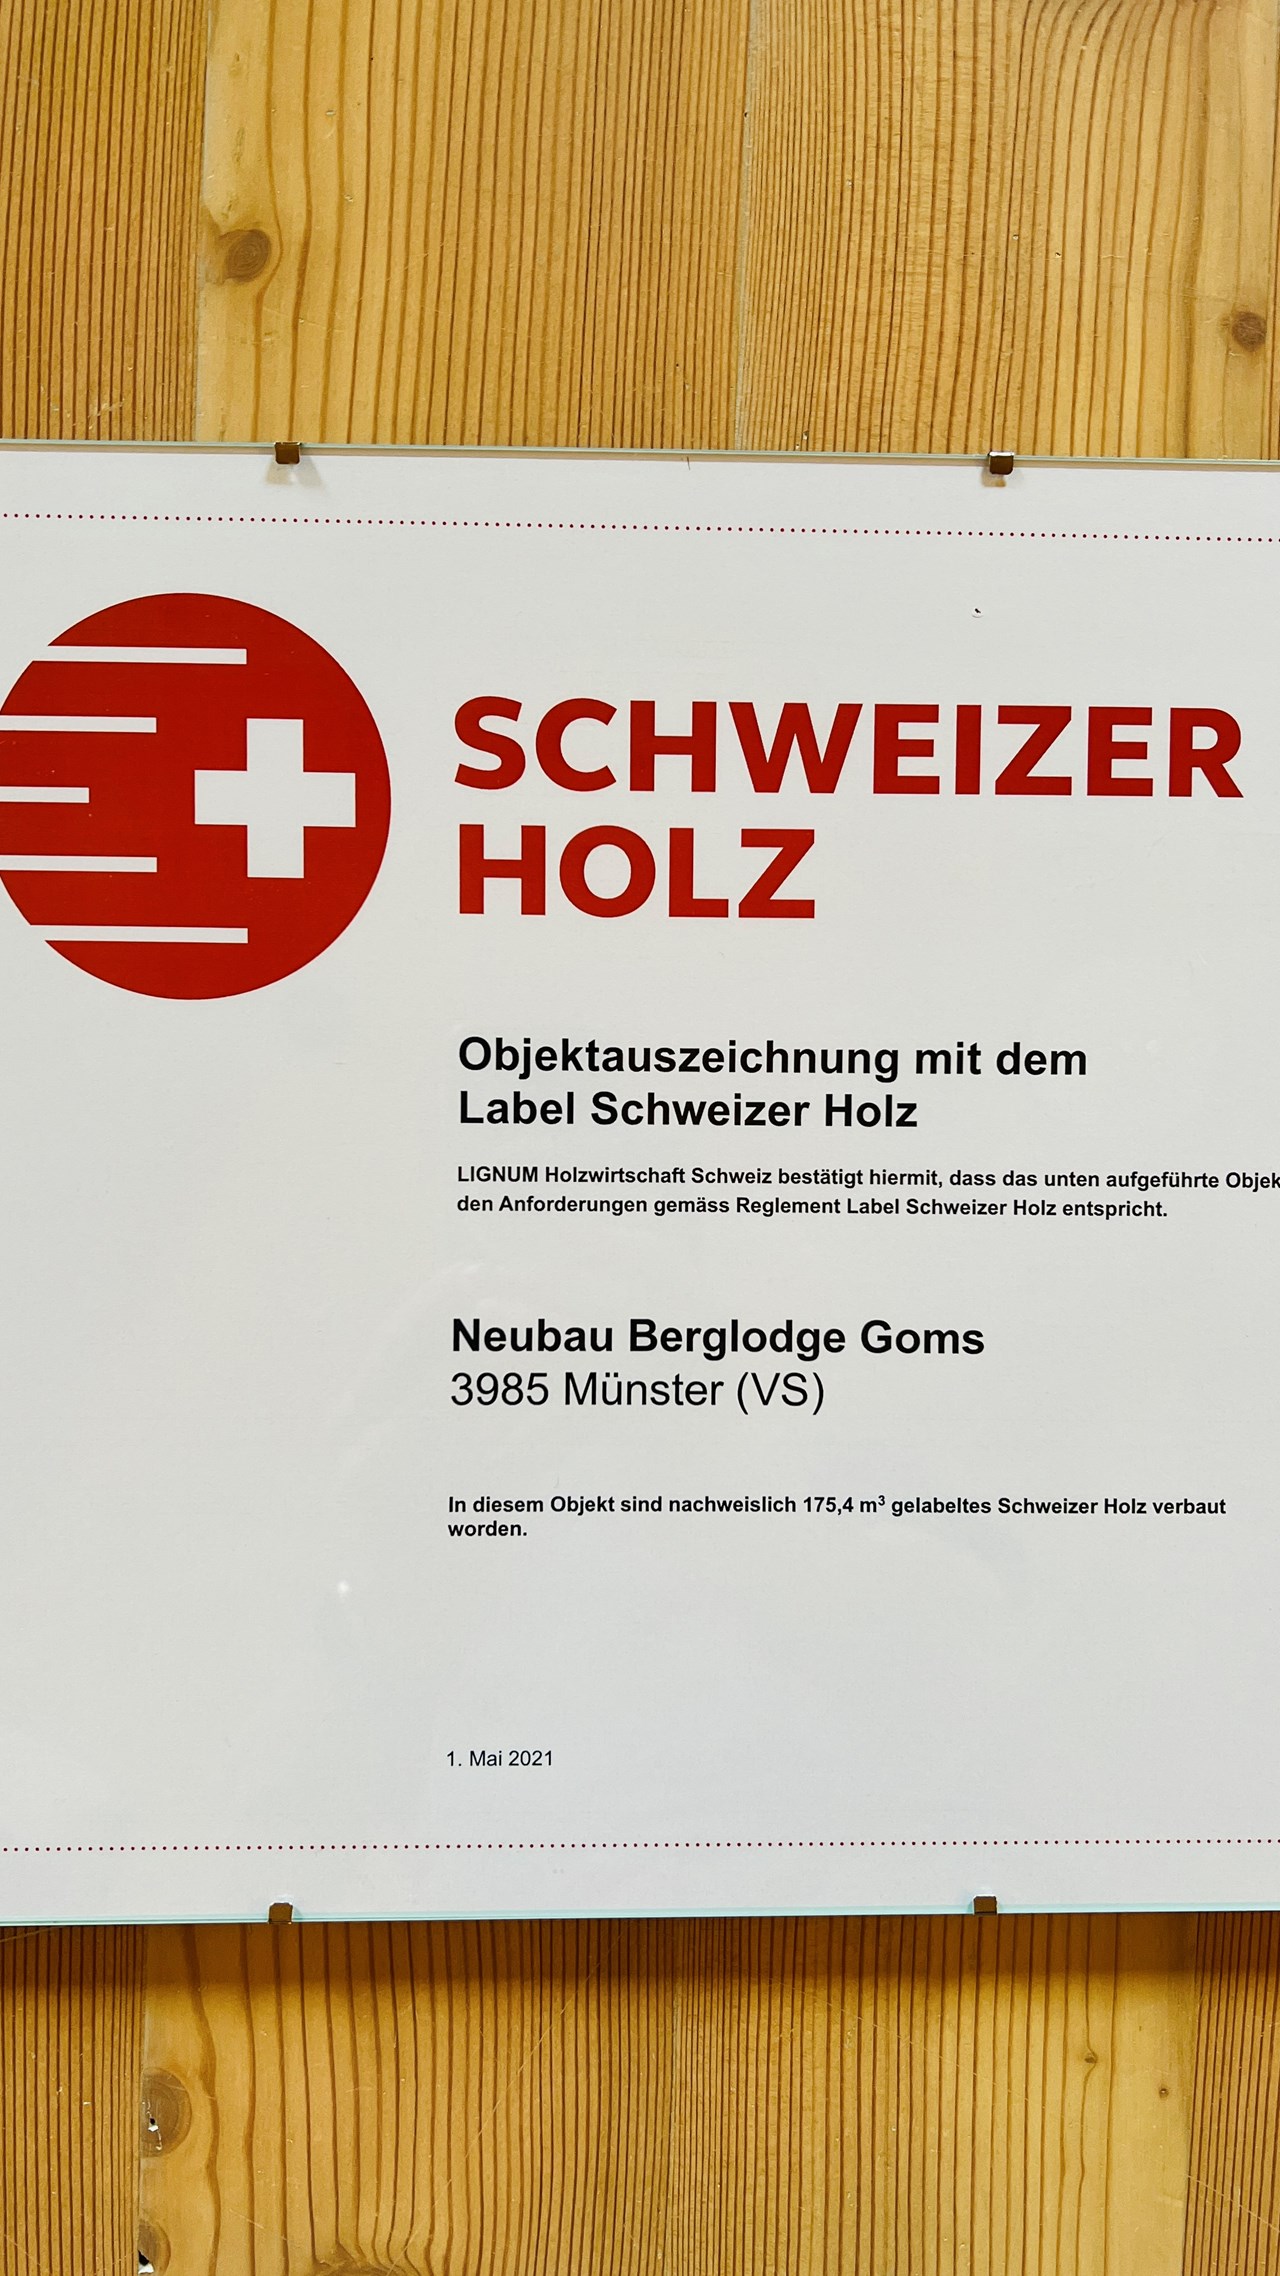 Berglodge Goms Nachweise Zertifikate Objektauszeichnung Label Schweizer Holz